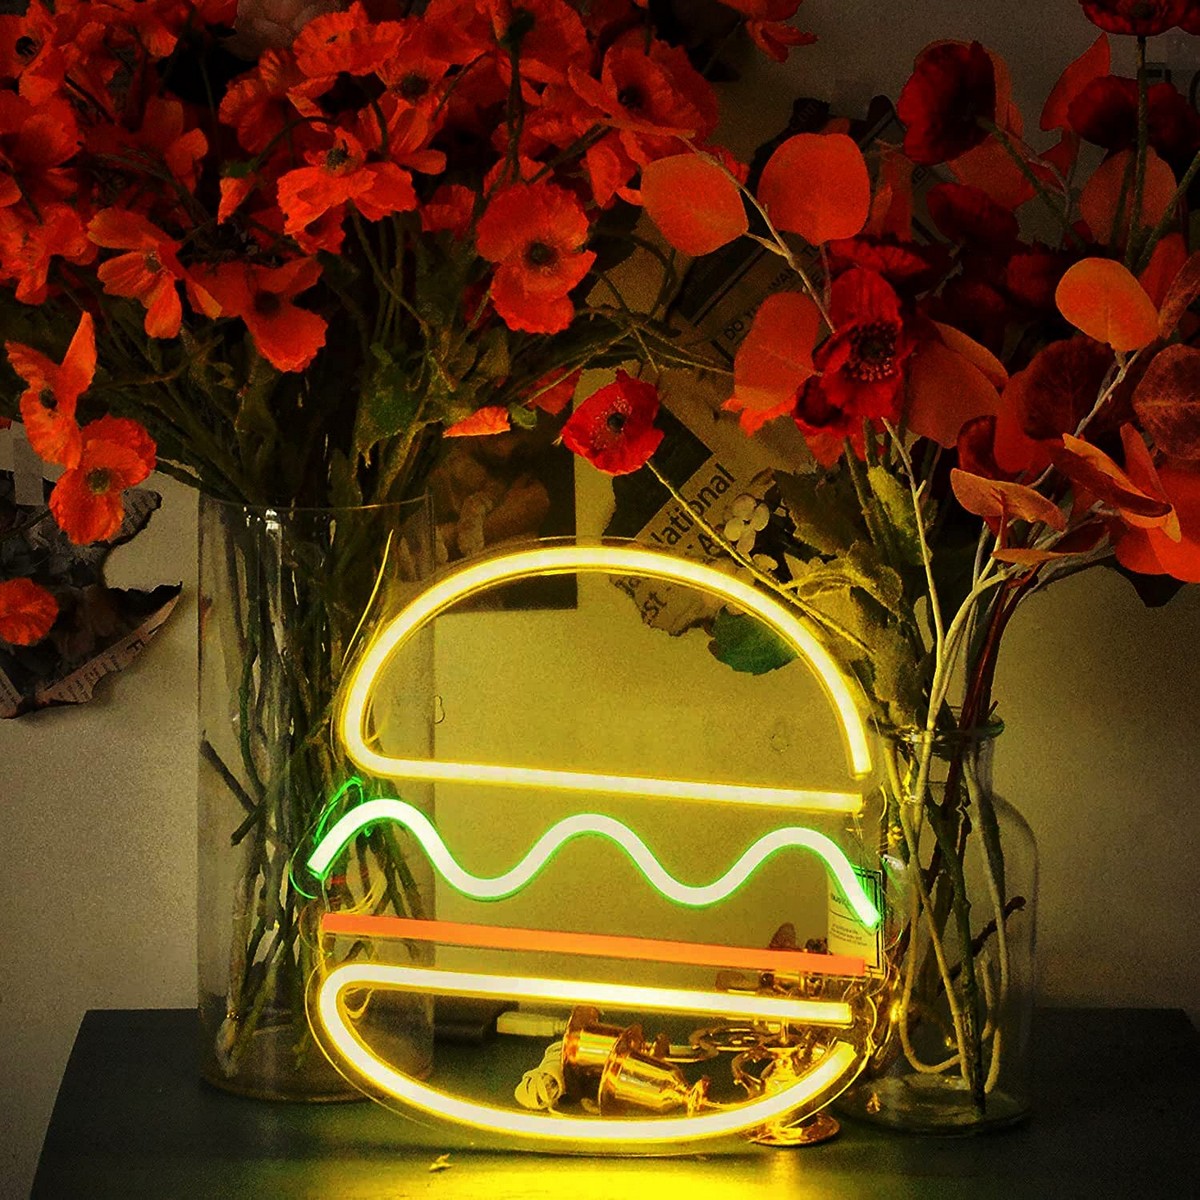 Logo nhà hàng đèn neon bảng dẫn - bánh mì kẹp thịt hamburger